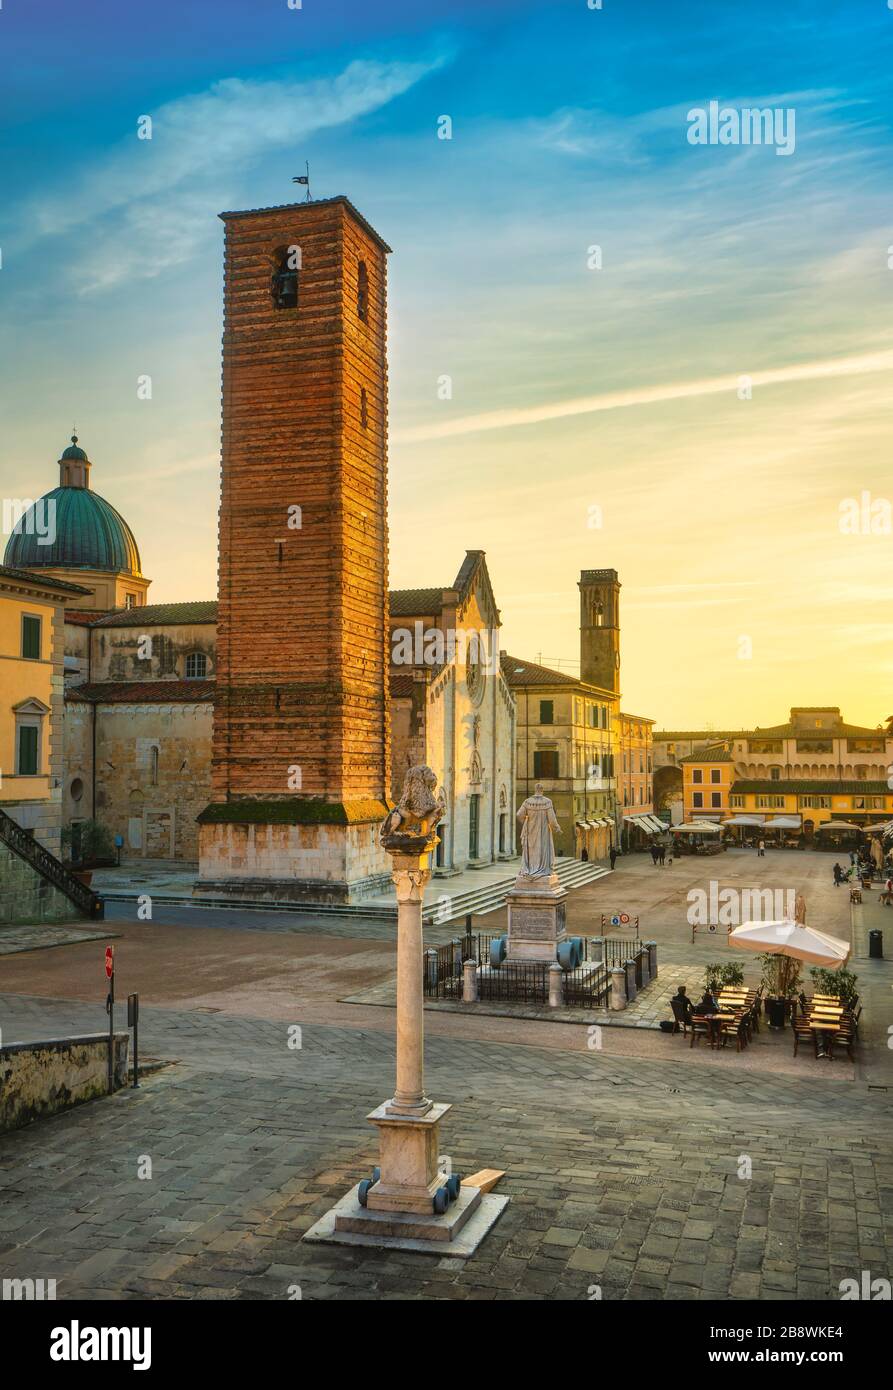 Pietrasanta vue sur la vieille ville au coucher du soleil, la cathédrale de San Martino et Torre civica. Versilia Lucca Toscane Italie Europe Banque D'Images